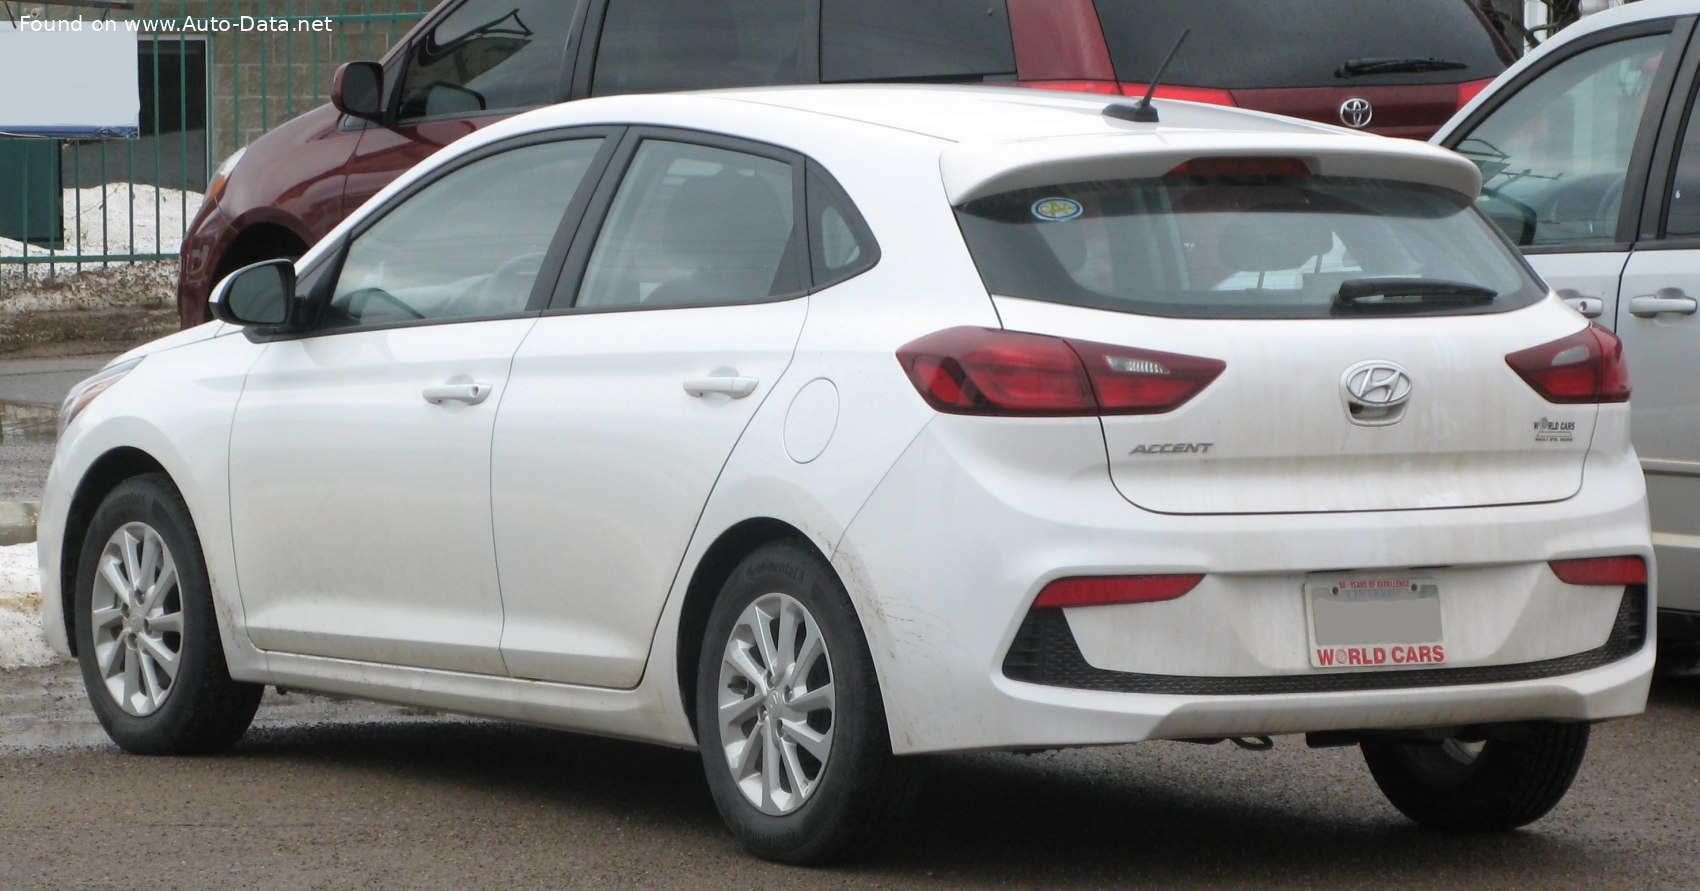 File:Opel Astra J rear-1 20100725.jpg - Wikipedia